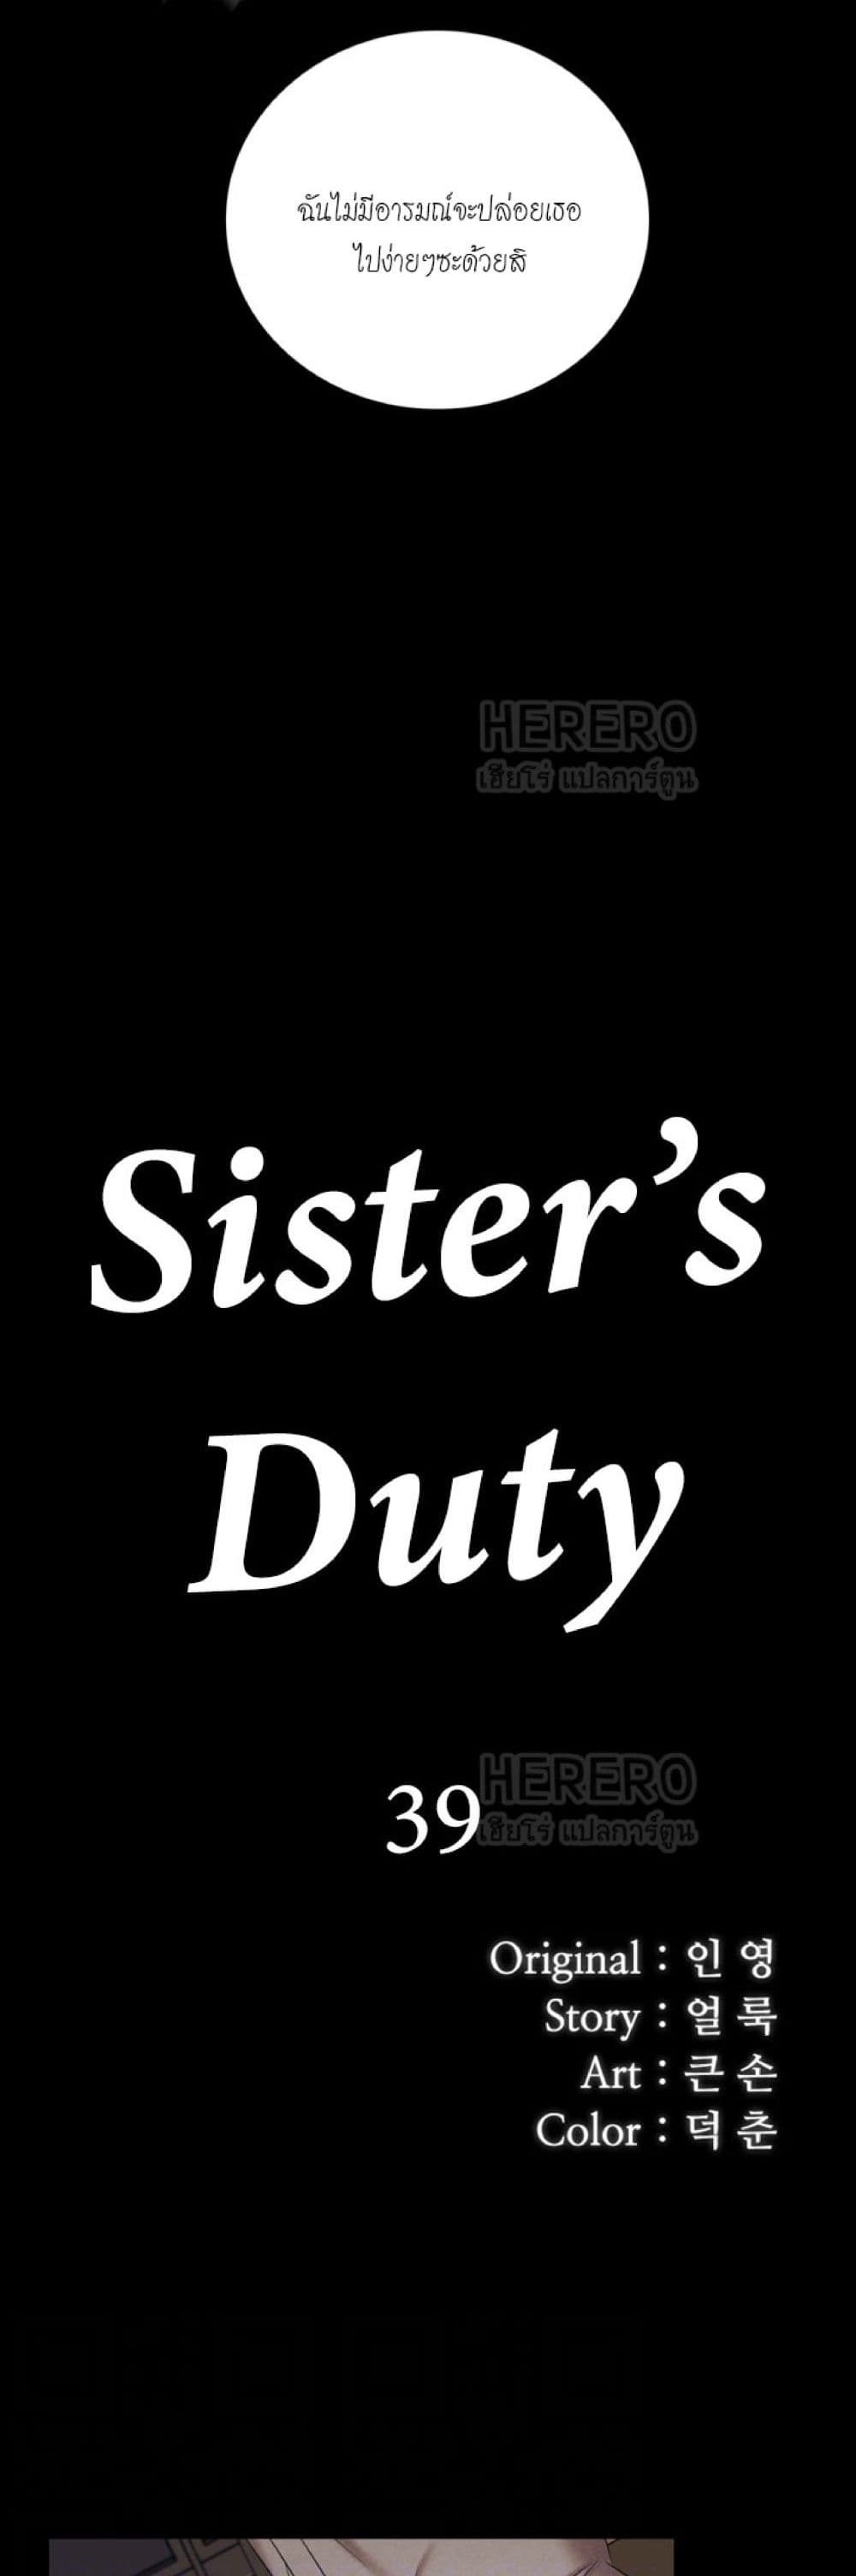 Sister's Duty 39-39